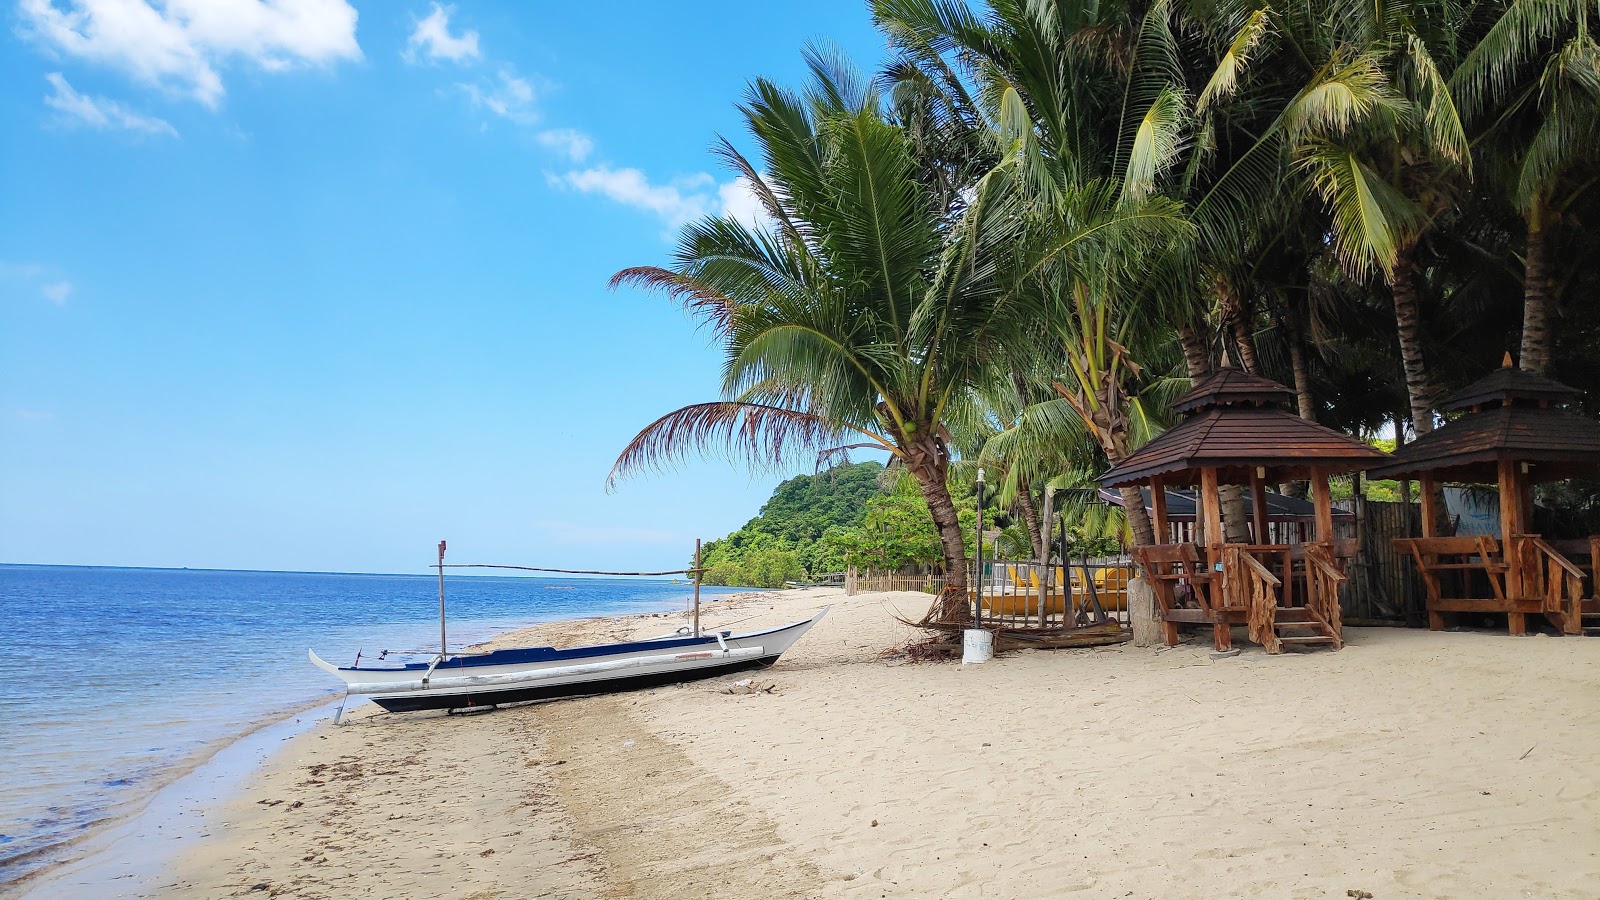 Fotografie cu Lian batangas beach - locul popular printre cunoscătorii de relaxare